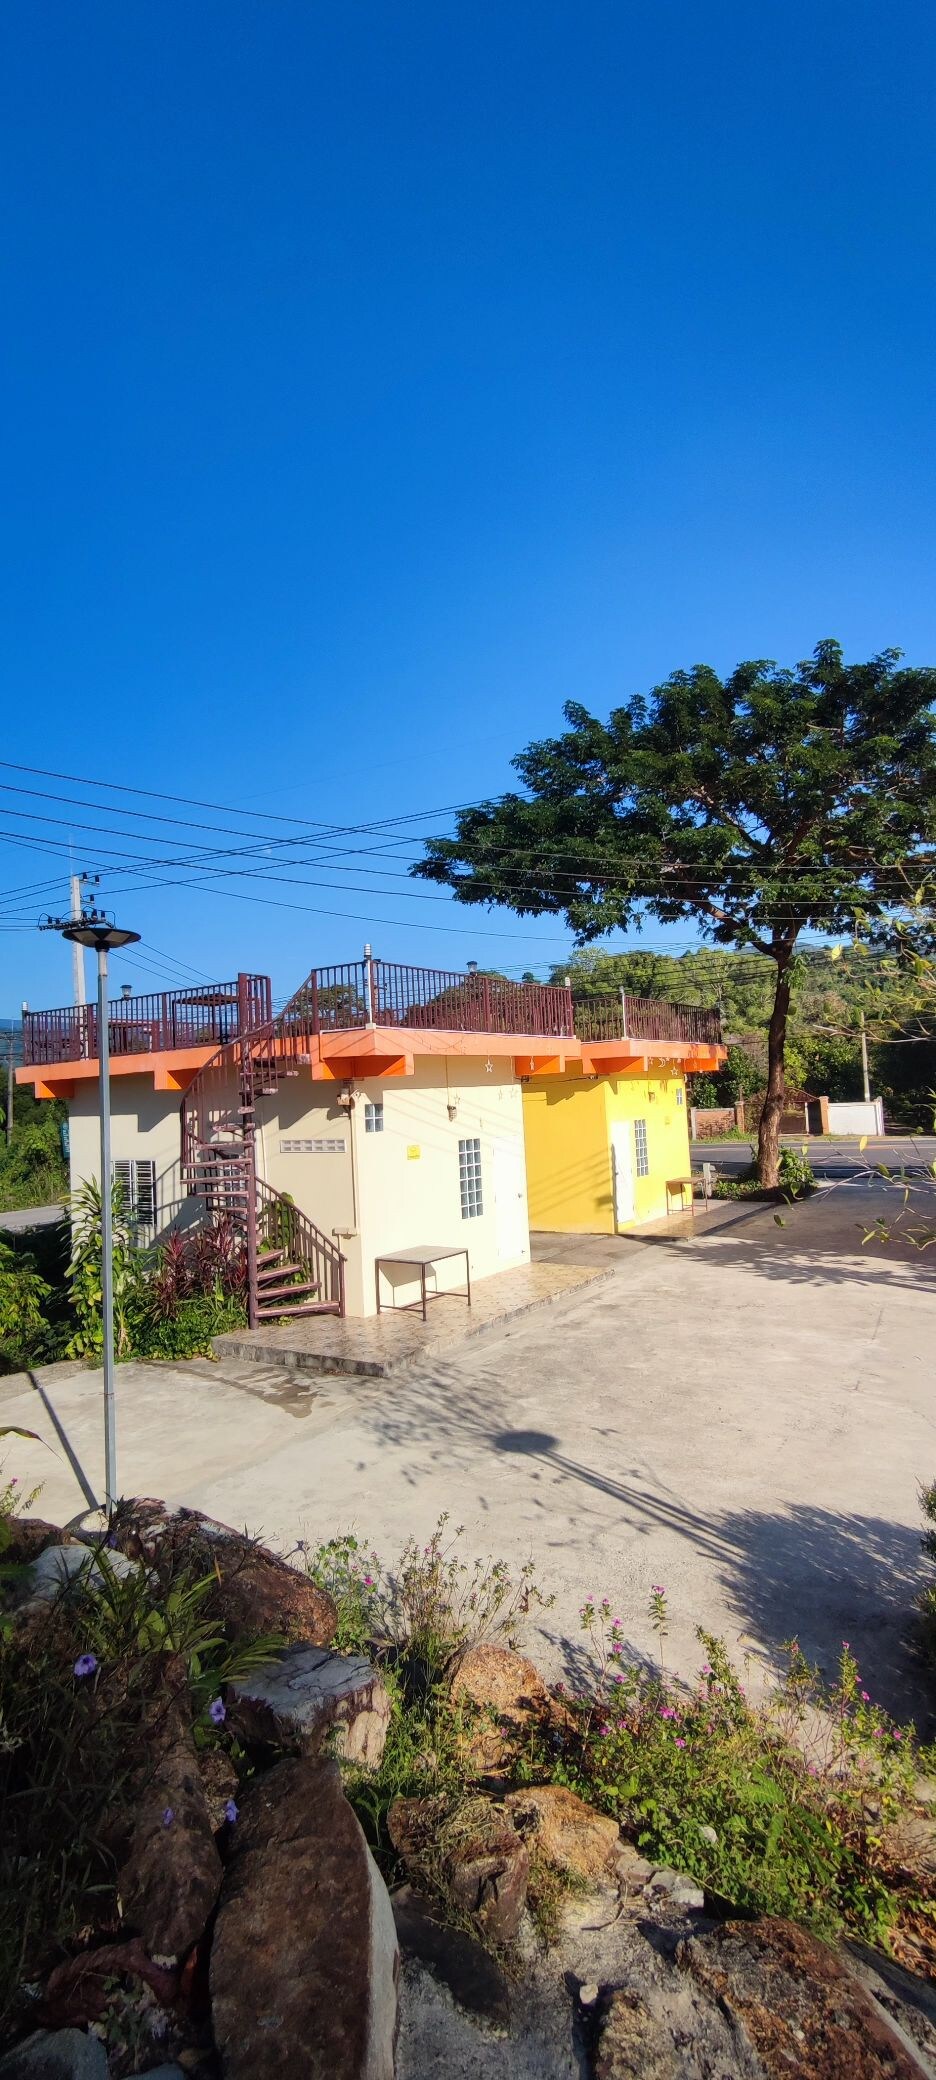 BanKhao BanRao度假村
带屋顶的小房子